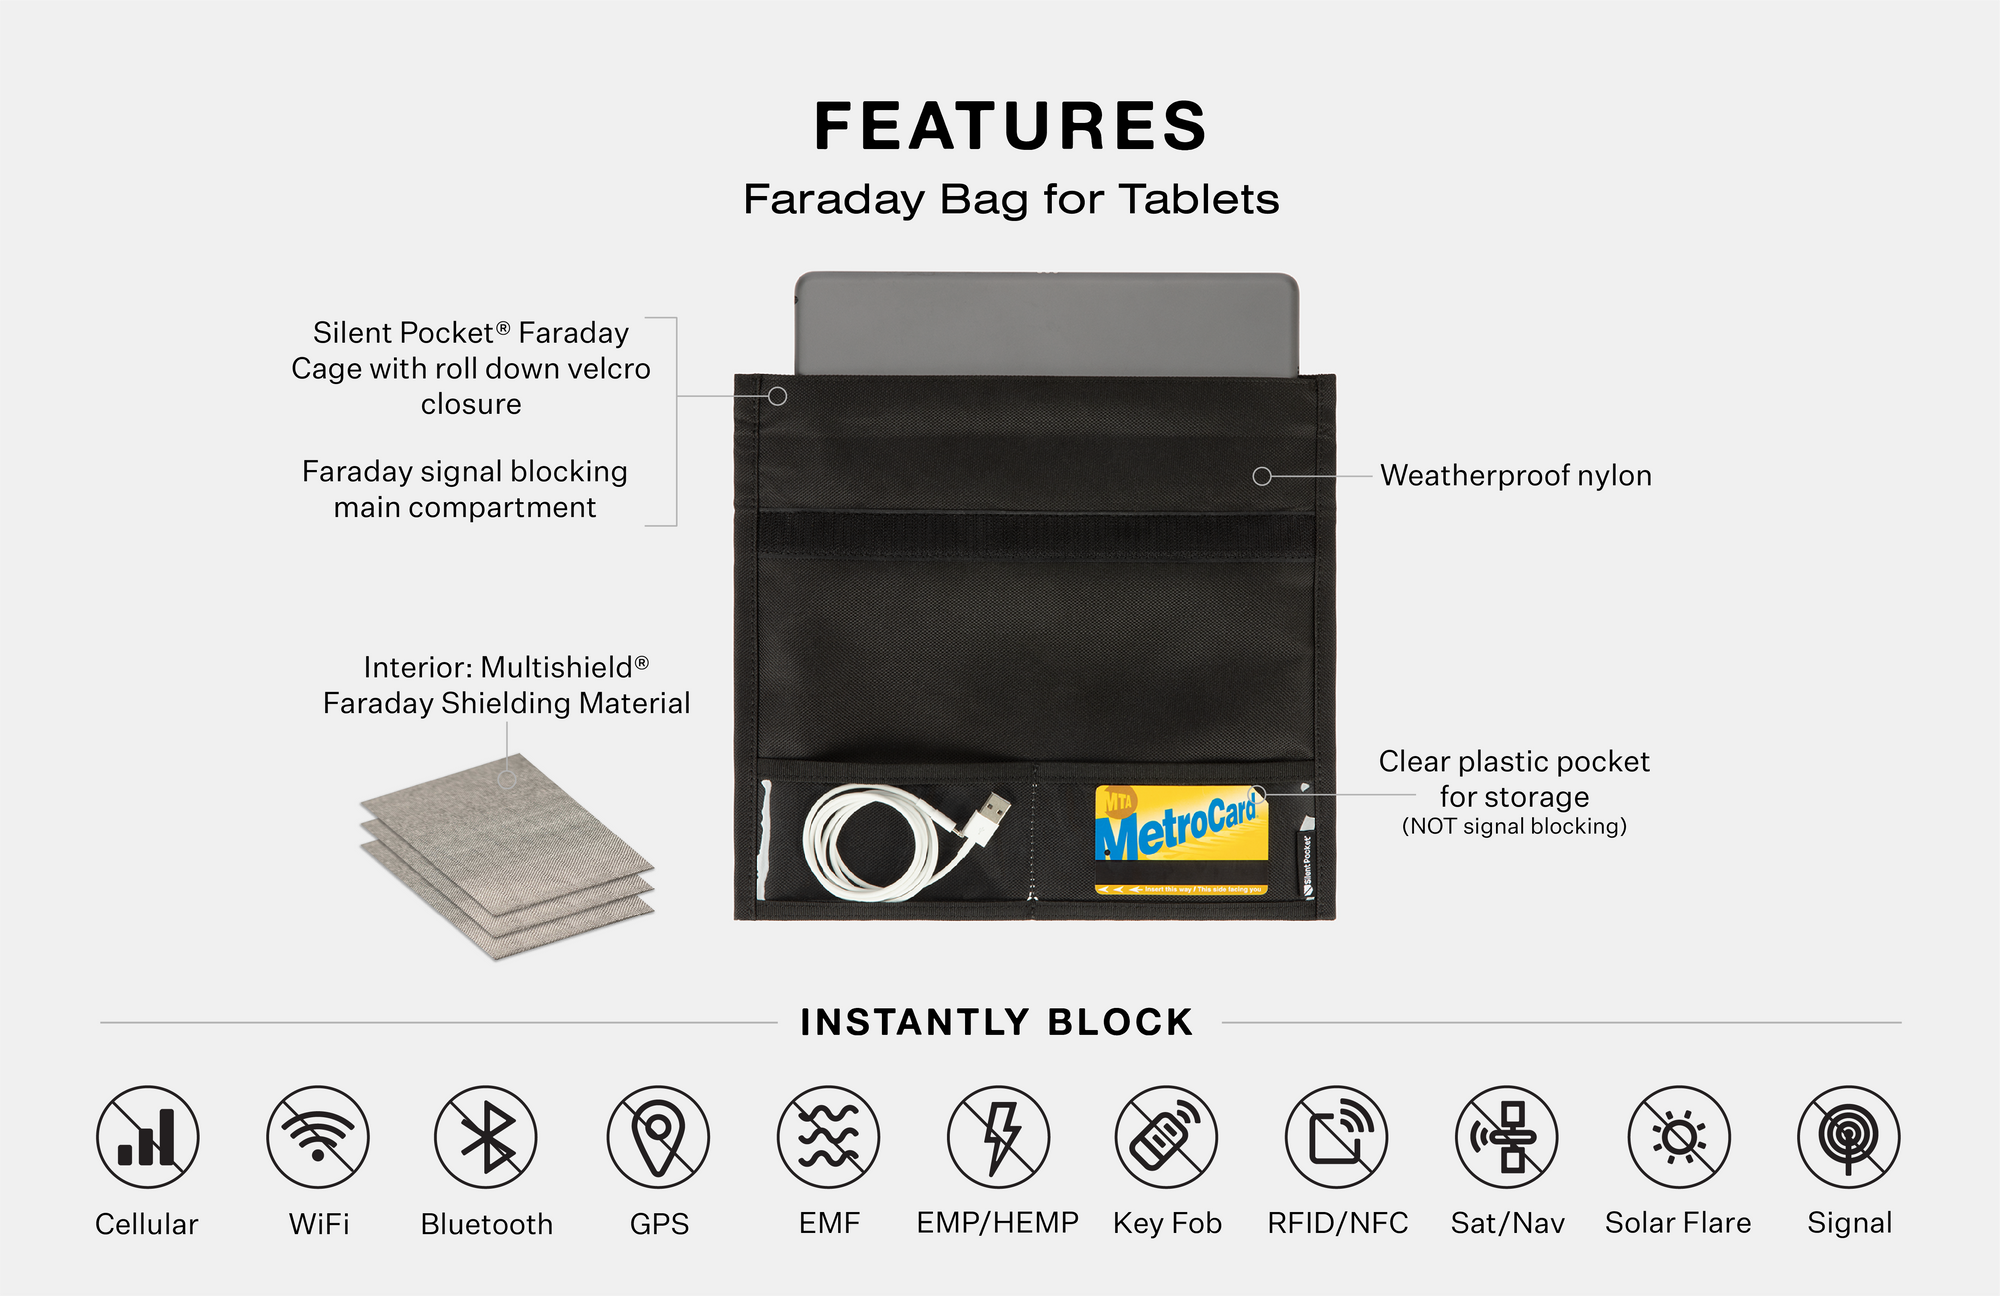 Faraday bag for tablets